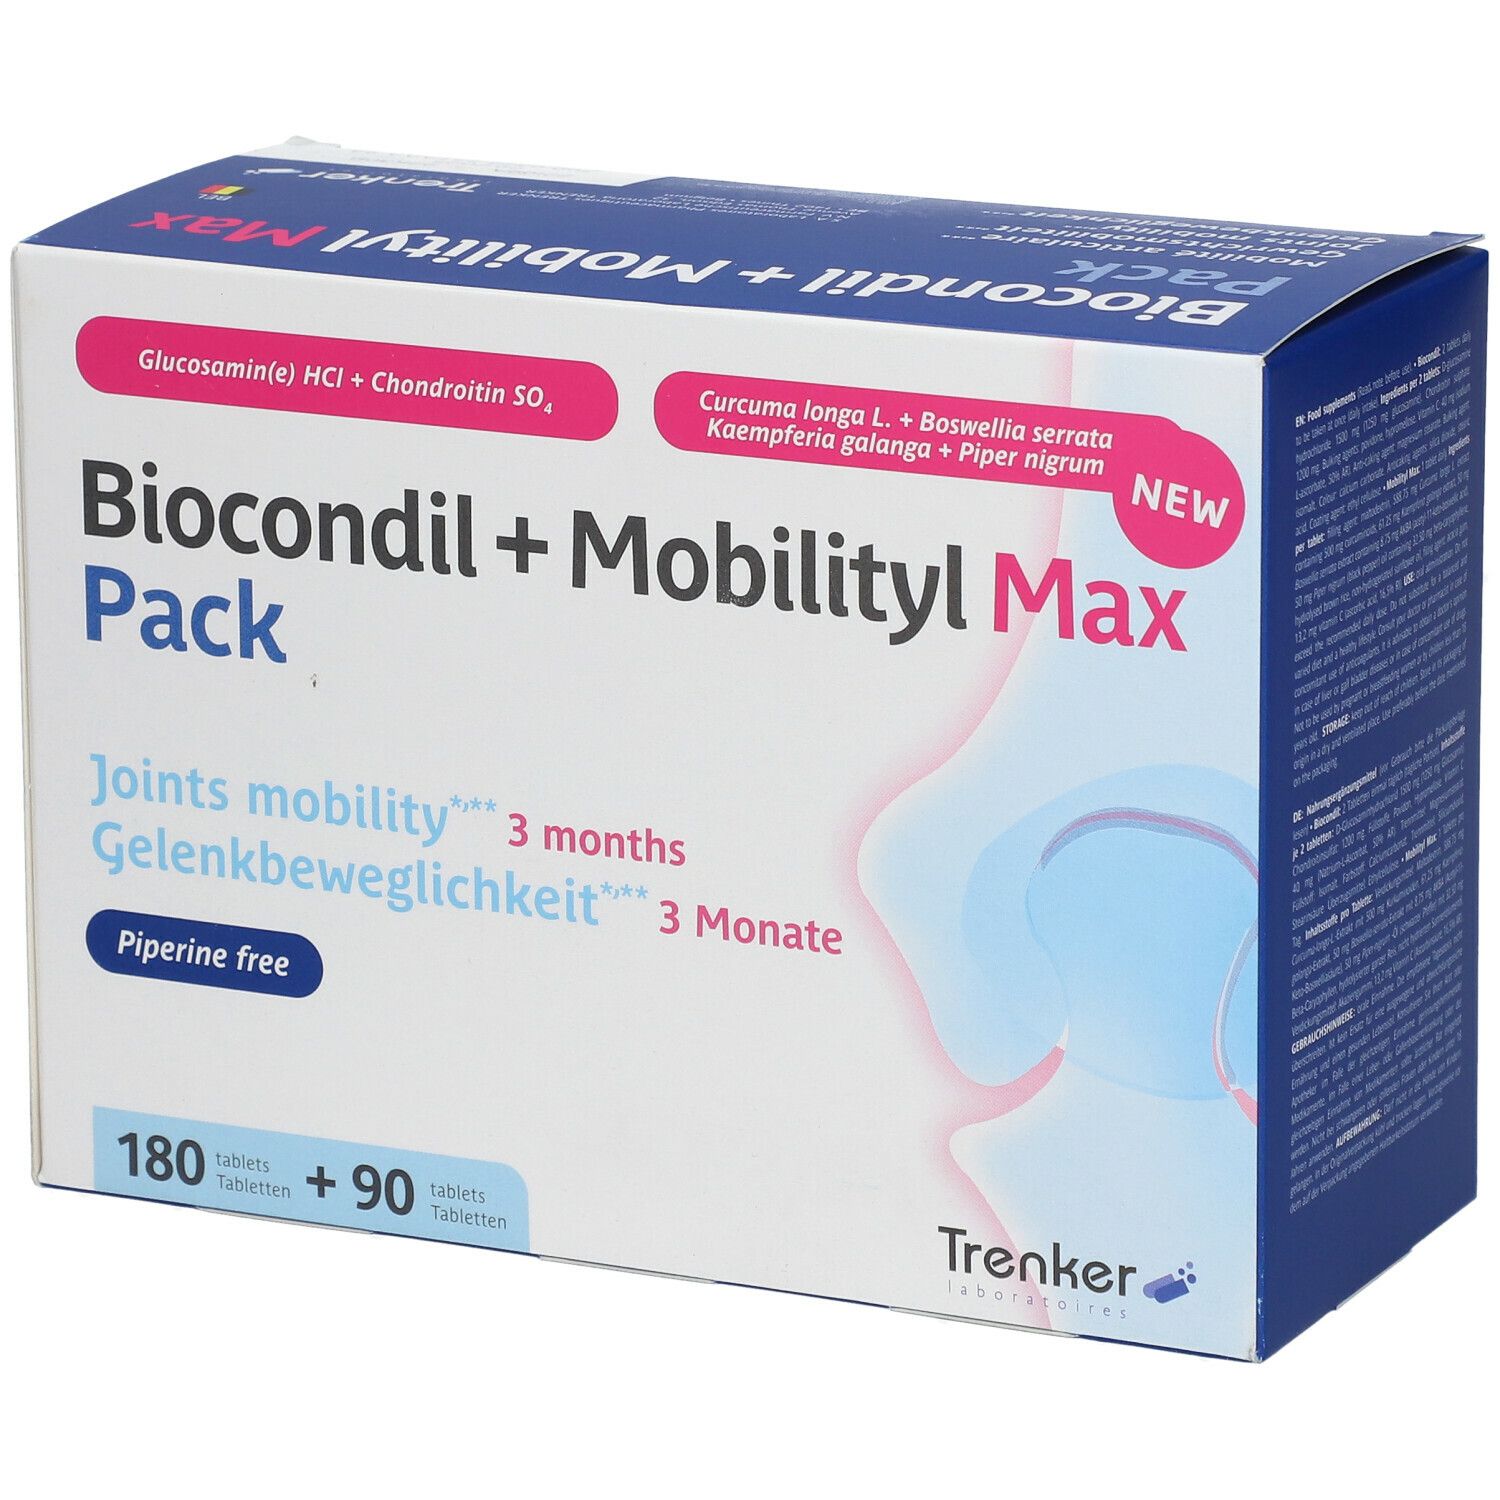 Biocondil + Mobilityl Max Pack